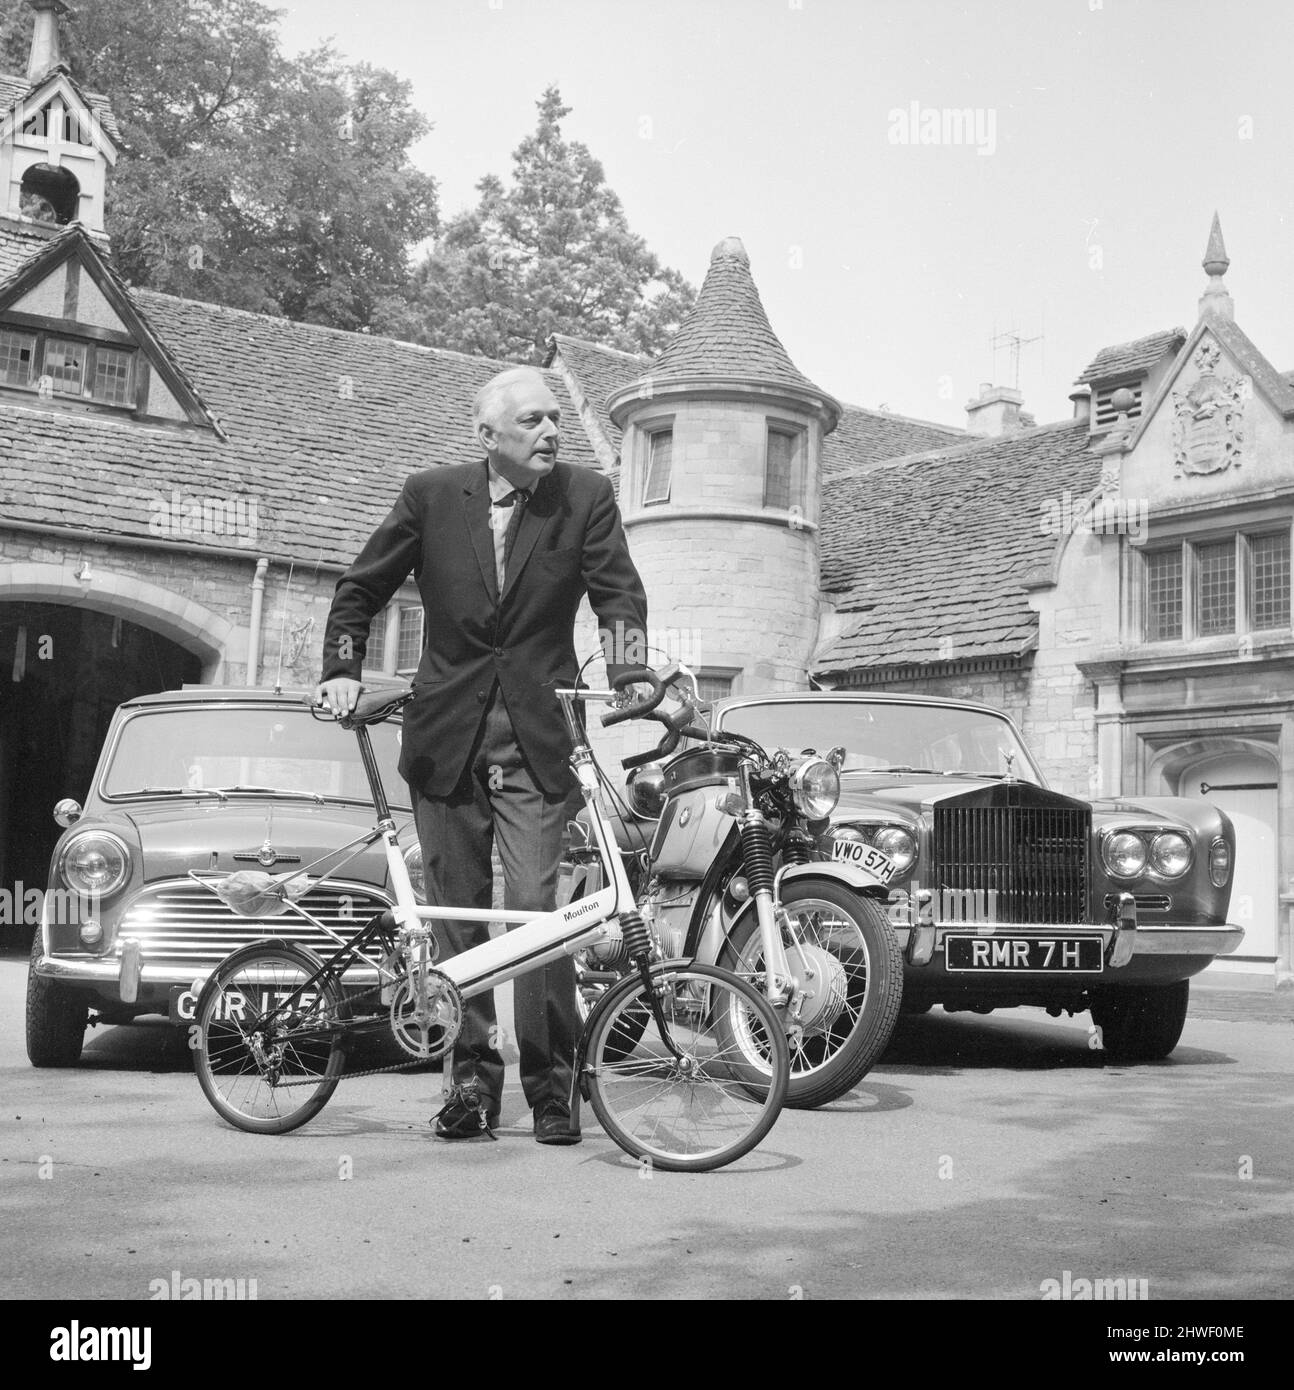 Dr. Alexander Eric Molton CBE (né le 9 avril 1920), alias Alex Molton, ingénieur et inventeur anglais, spécialisé dans la conception de suspension. Photographié avec un vélo, Mini, Rolls Royce et BMW moto surpassent sa maison à 'The Hall' à Bradford-on-Avon août 1970. Banque D'Images